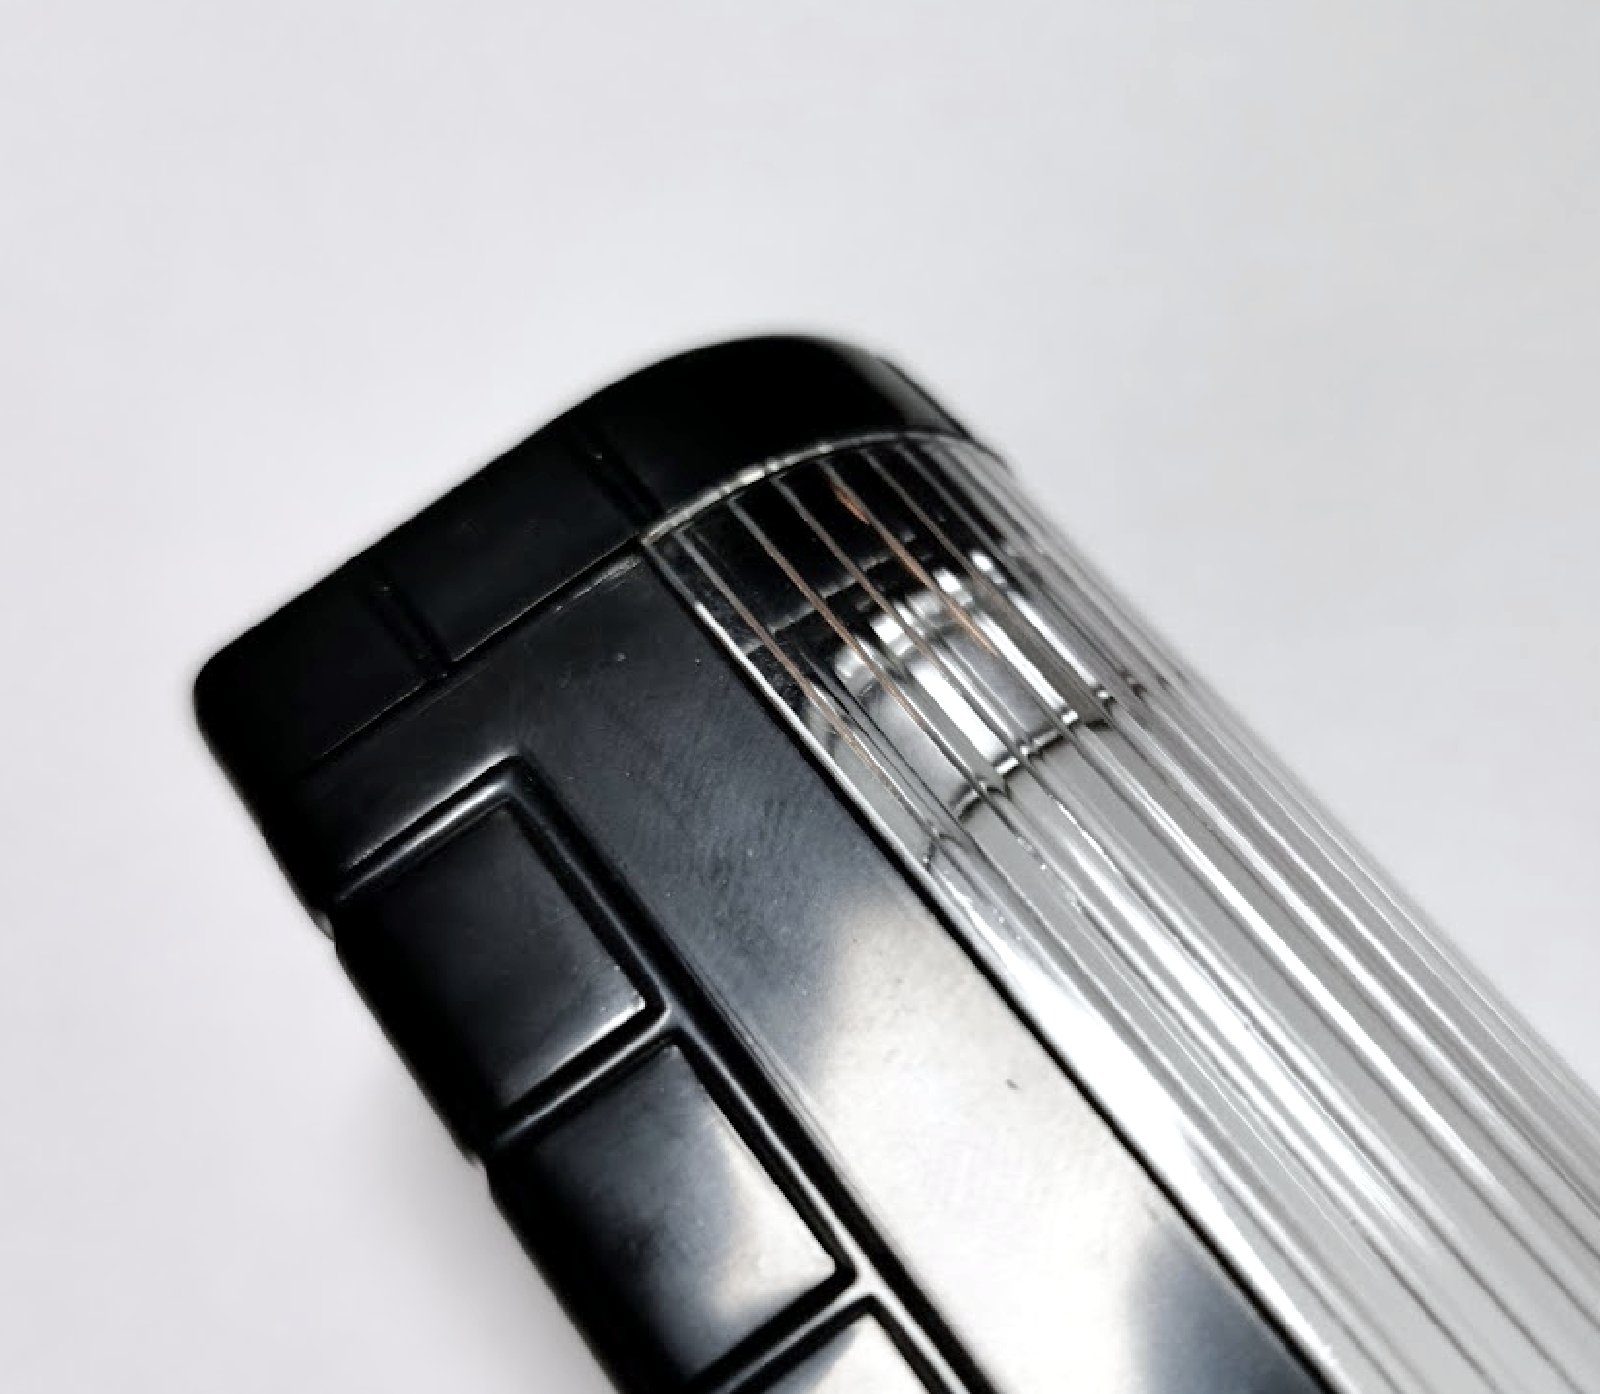 Leselampe Taschenlampe Leuchte KFZ Leuchte Leselicht HR Lampe Ambiente Auto Zusatz Autocomfort